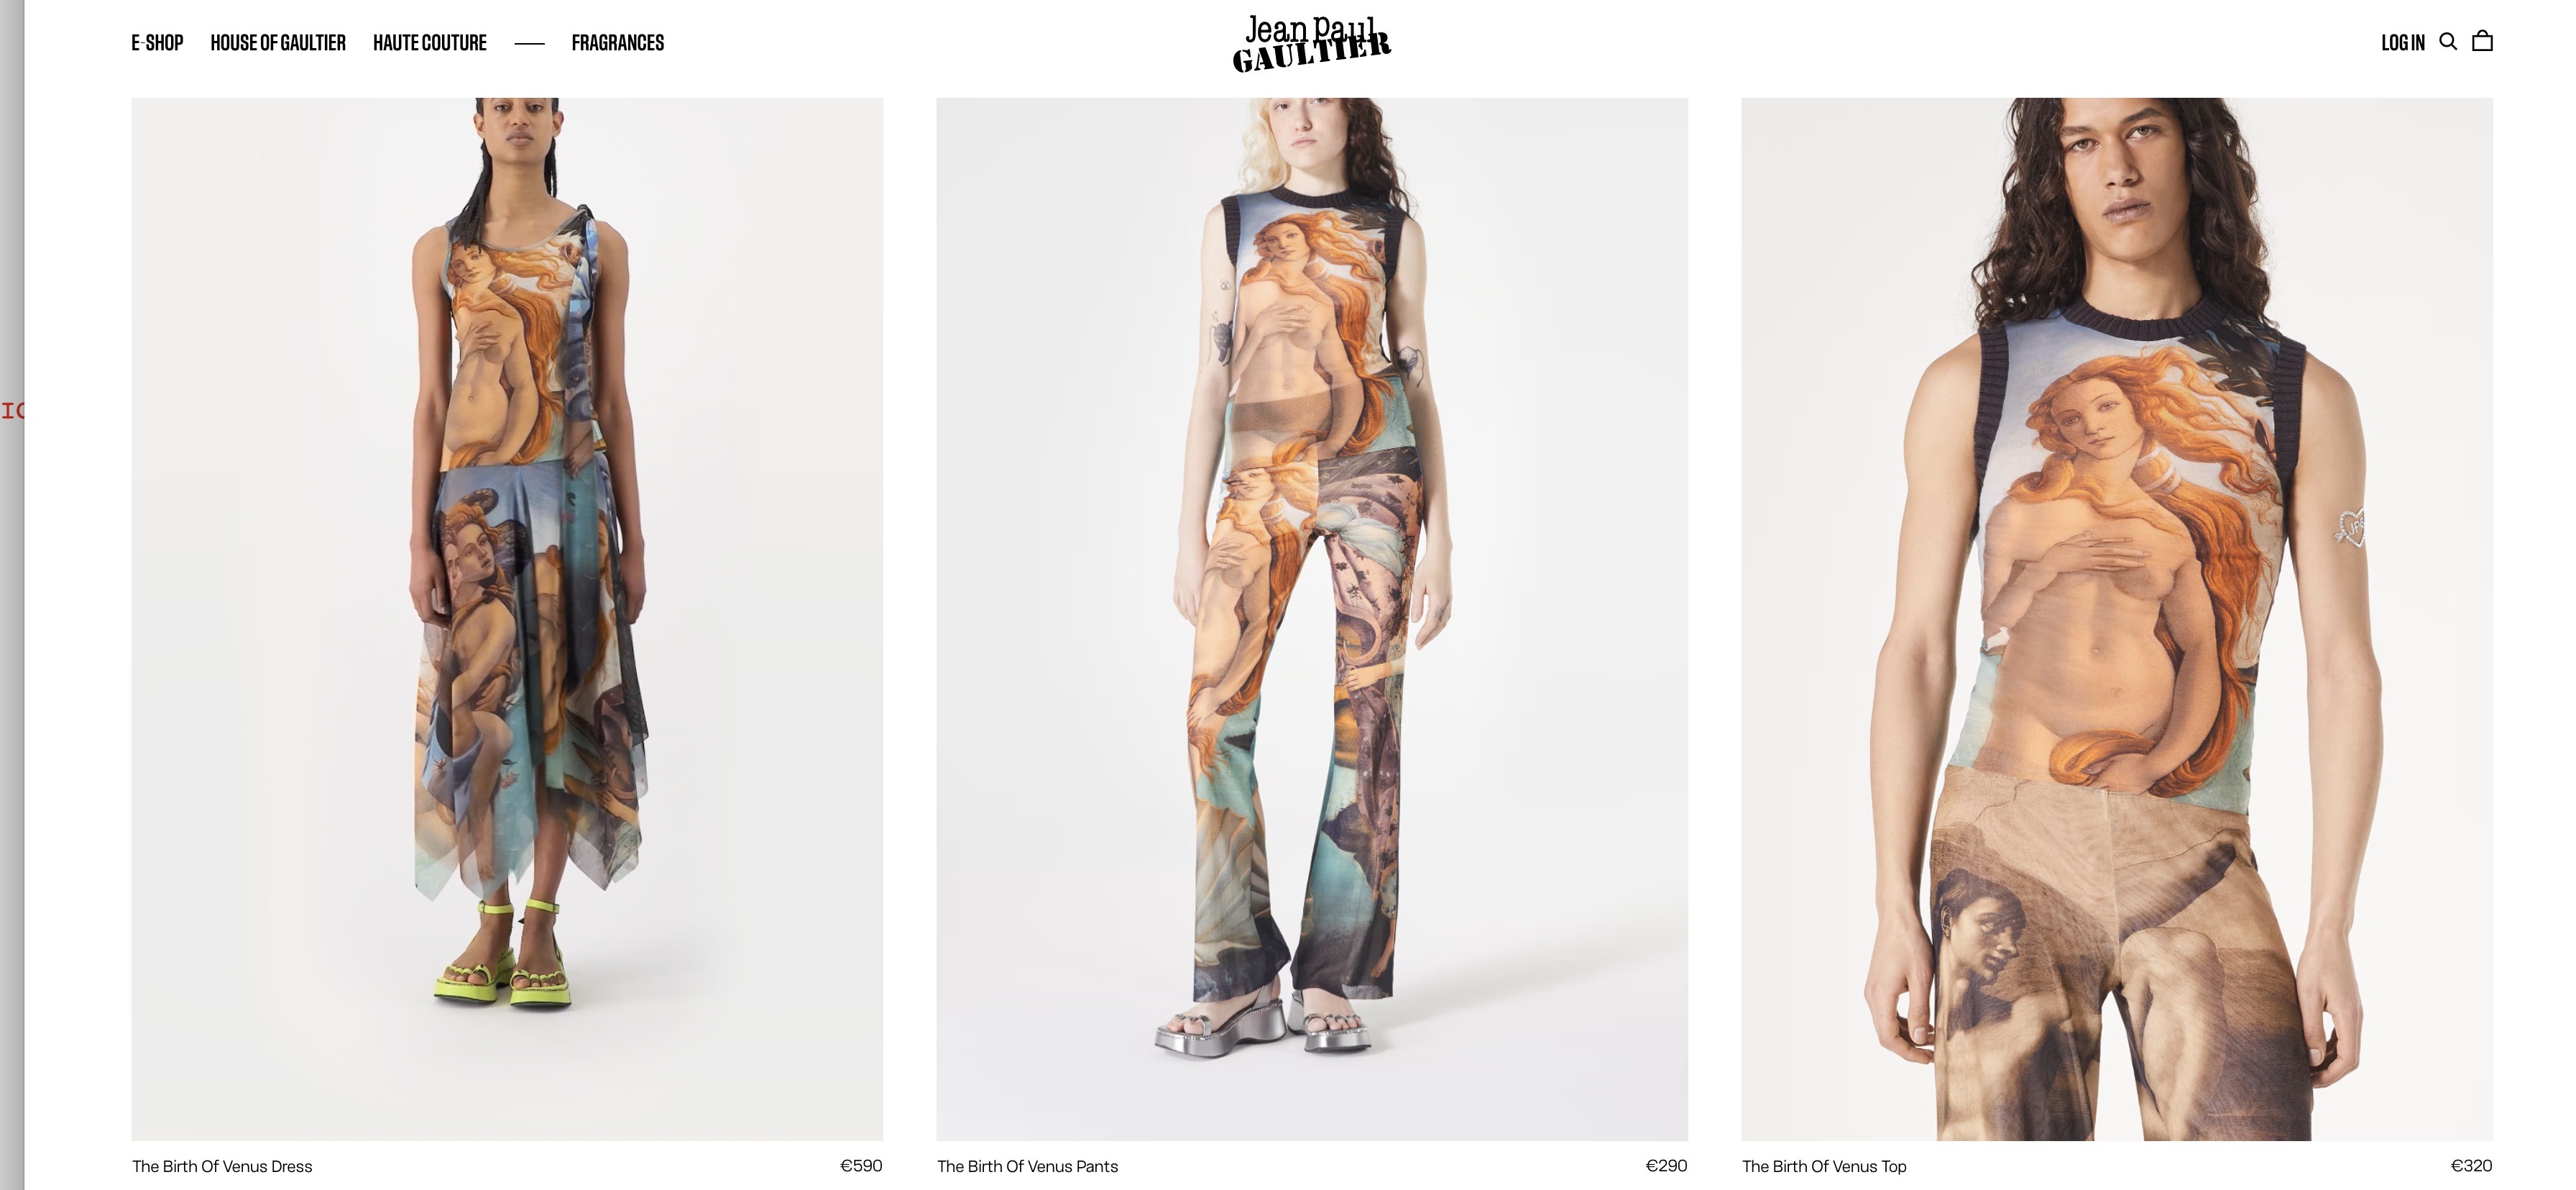 Gli Uffizi fanno causa a Jean Paul Gaultier per l'immagine della Venere sui vestiti